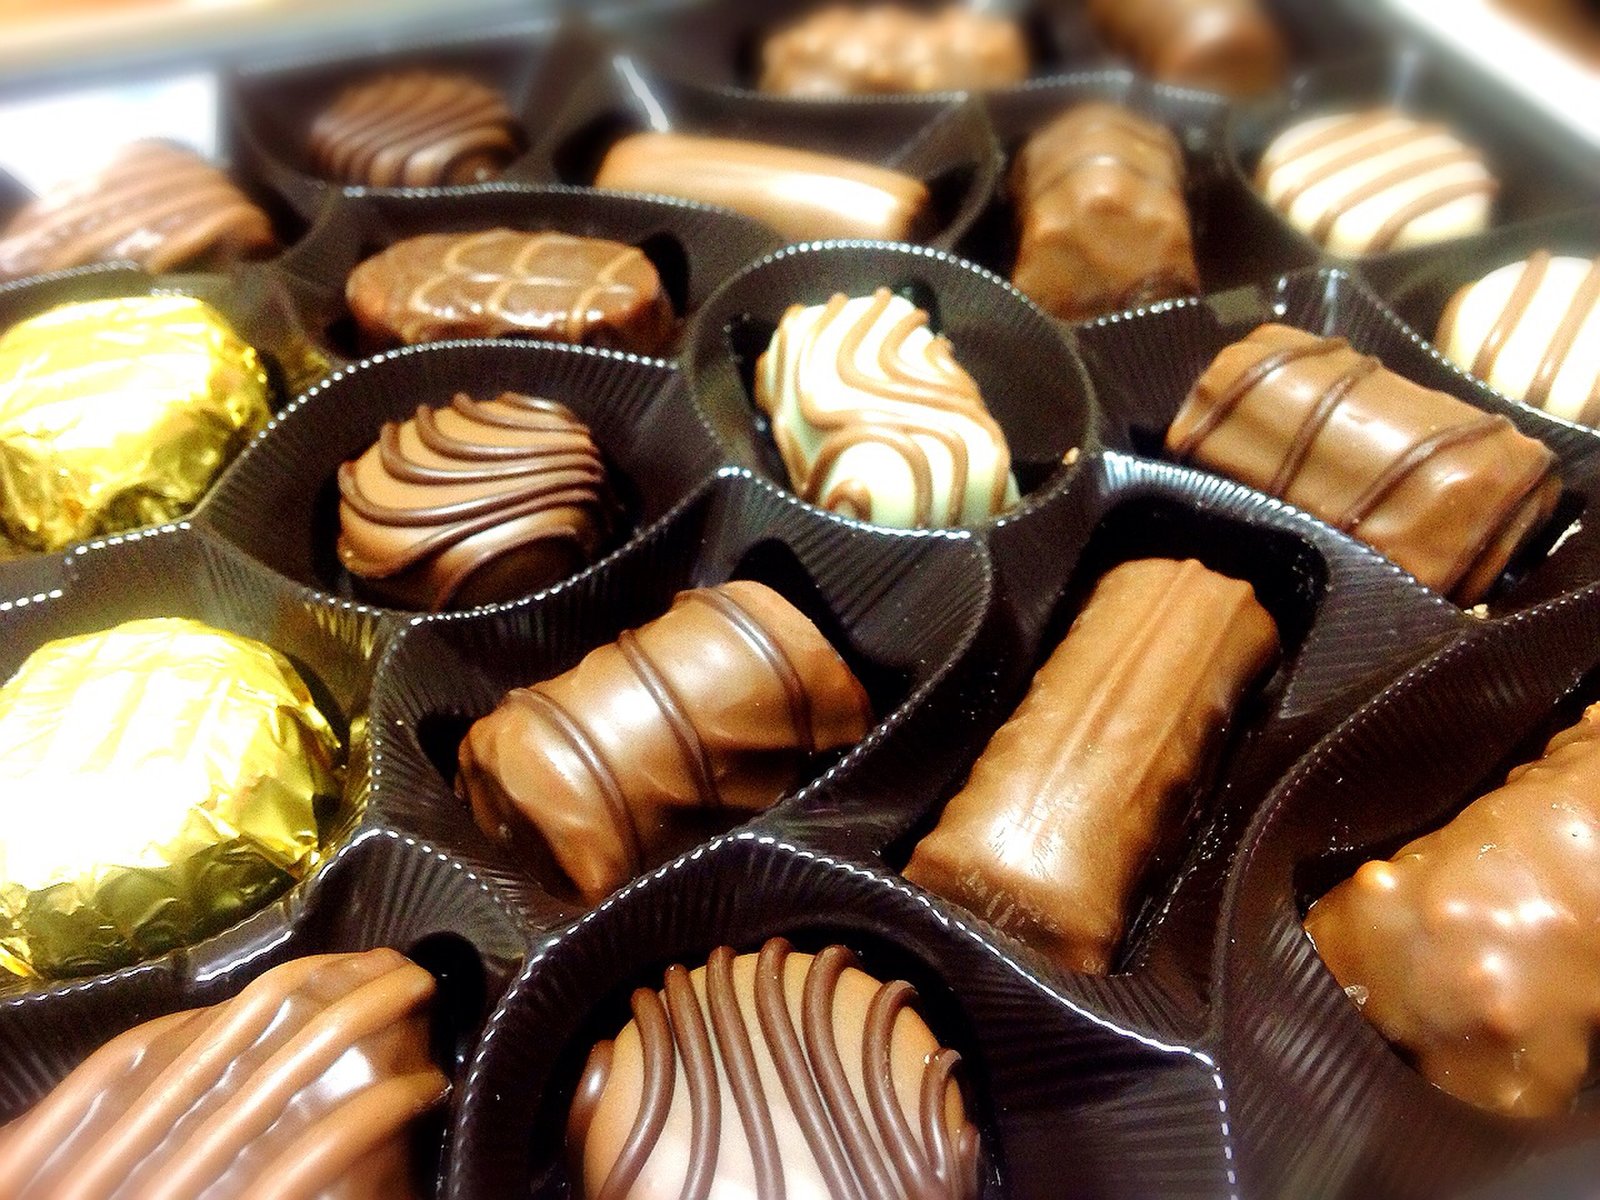 人気のkaldiで義理チョコ 友チョコを揃えよう バレンタインにおすすめチョコレートまとめ Playlife プレイライフ